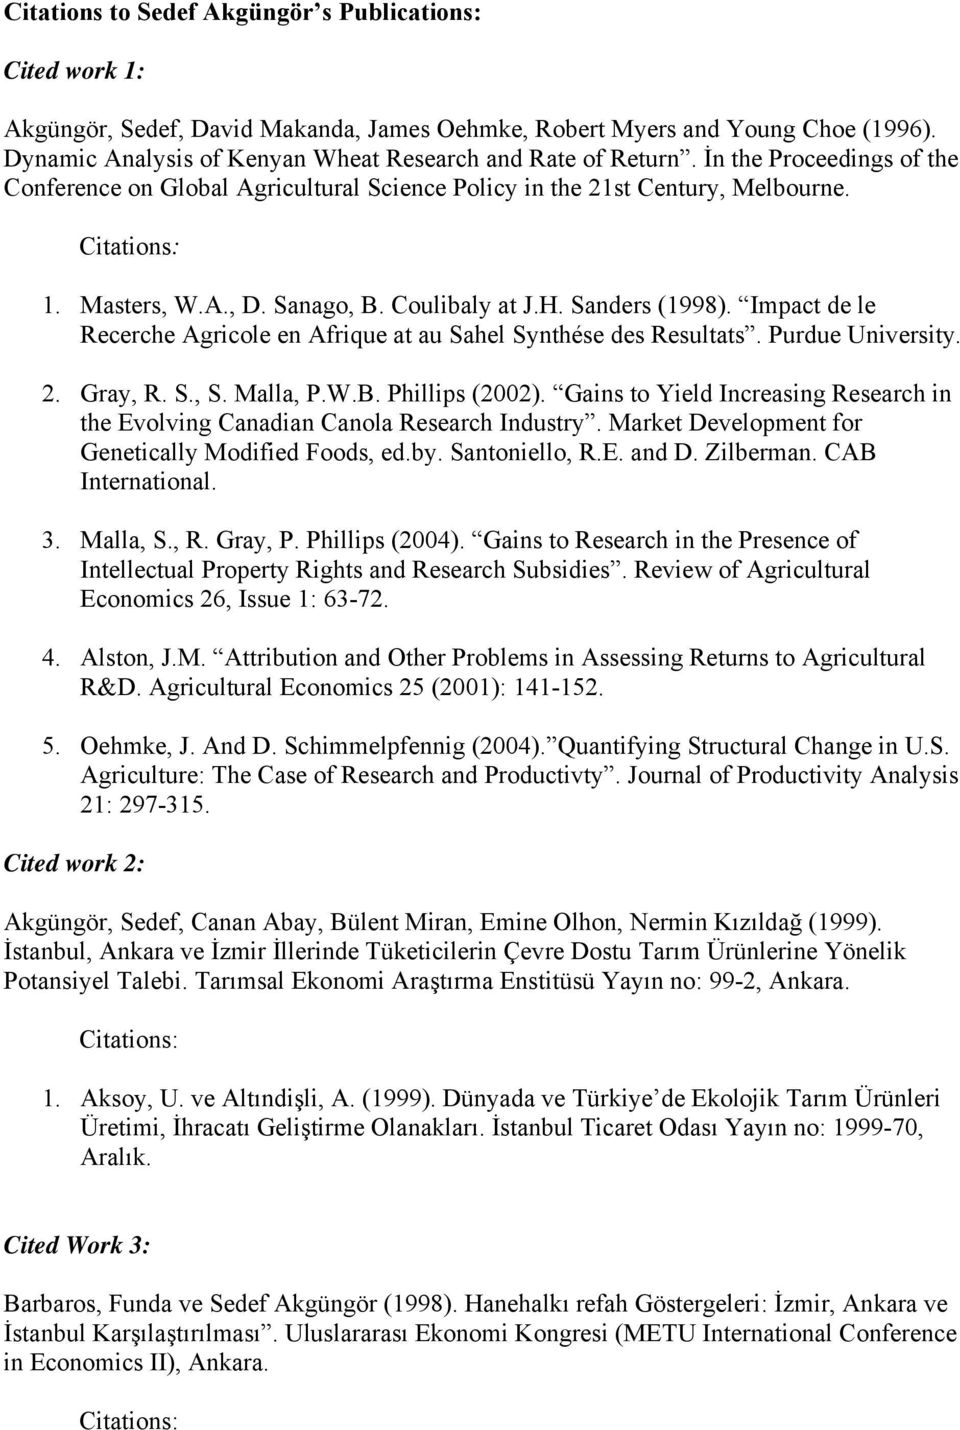 Sanago, B. Coulibaly at J.H. Sanders (1998). Impact de le Recerche Agricole en Afrique at au Sahel Synthése des Resultats. Purdue University. 2. Gray, R. S., S. Malla, P.W.B. Phillips (2002).